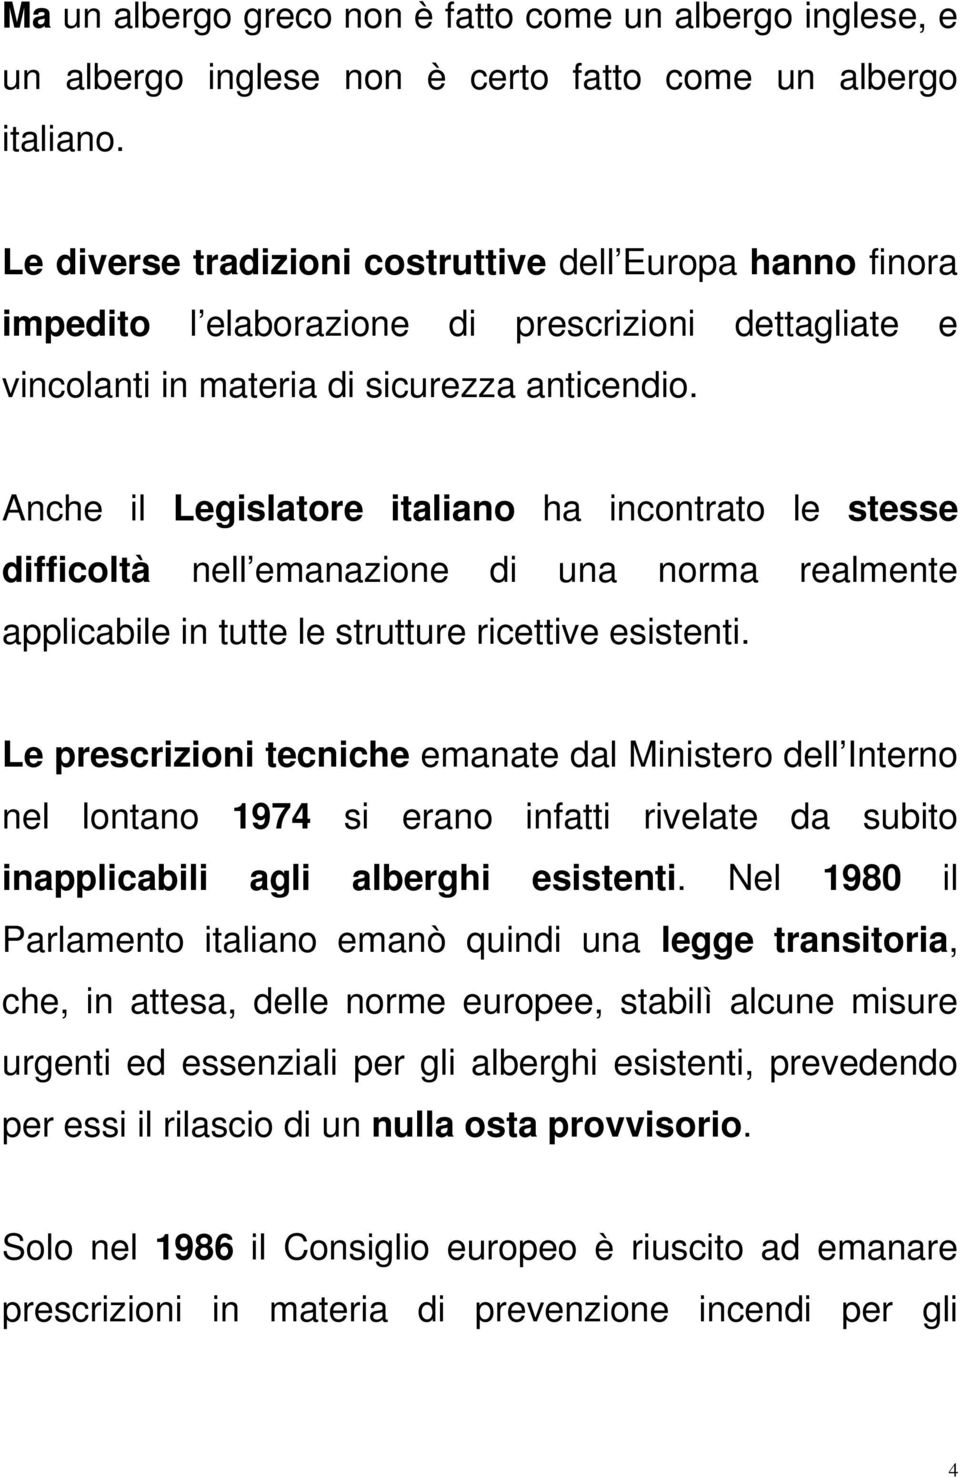 Anche il Legislatore italiano ha incontrato le stesse difficoltà nell emanazione di una norma realmente applicabile in tutte le strutture ricettive esistenti.